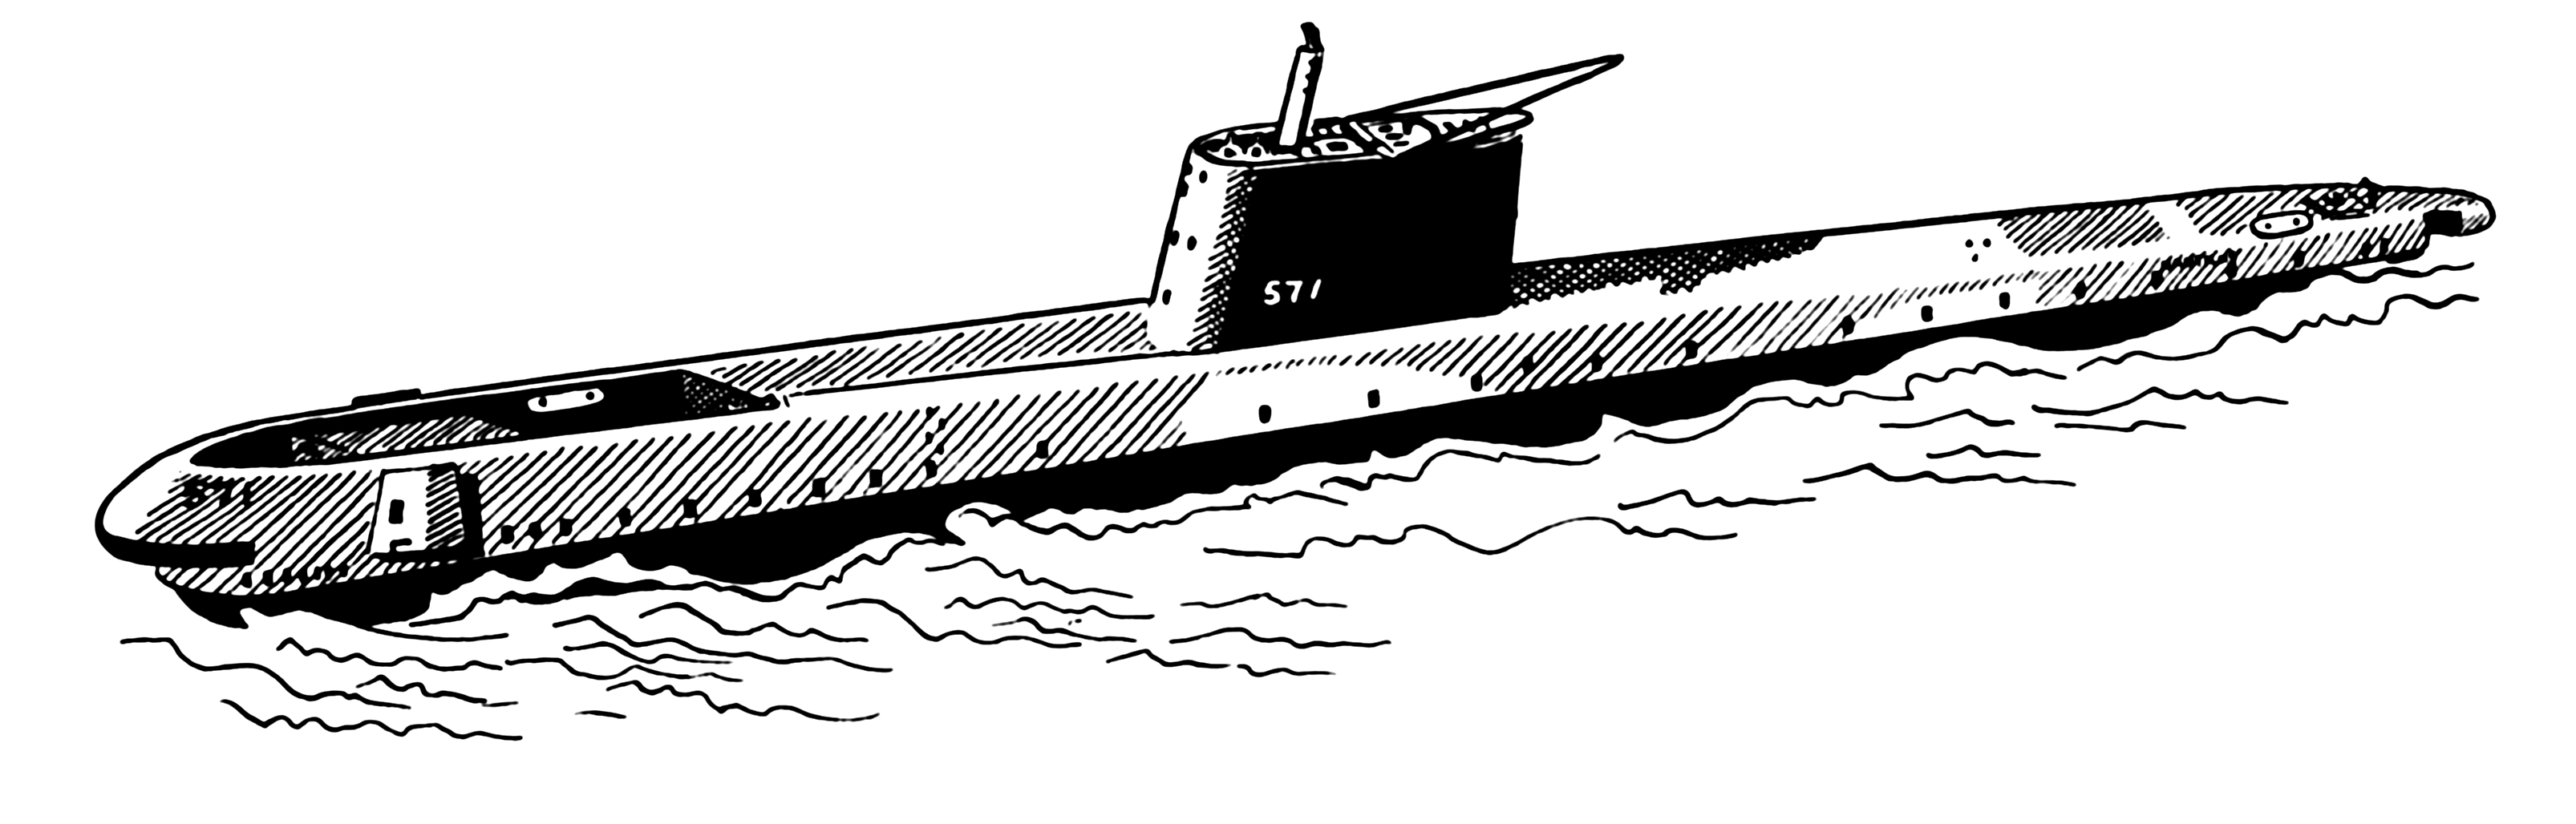 Эскиз подводной лодки